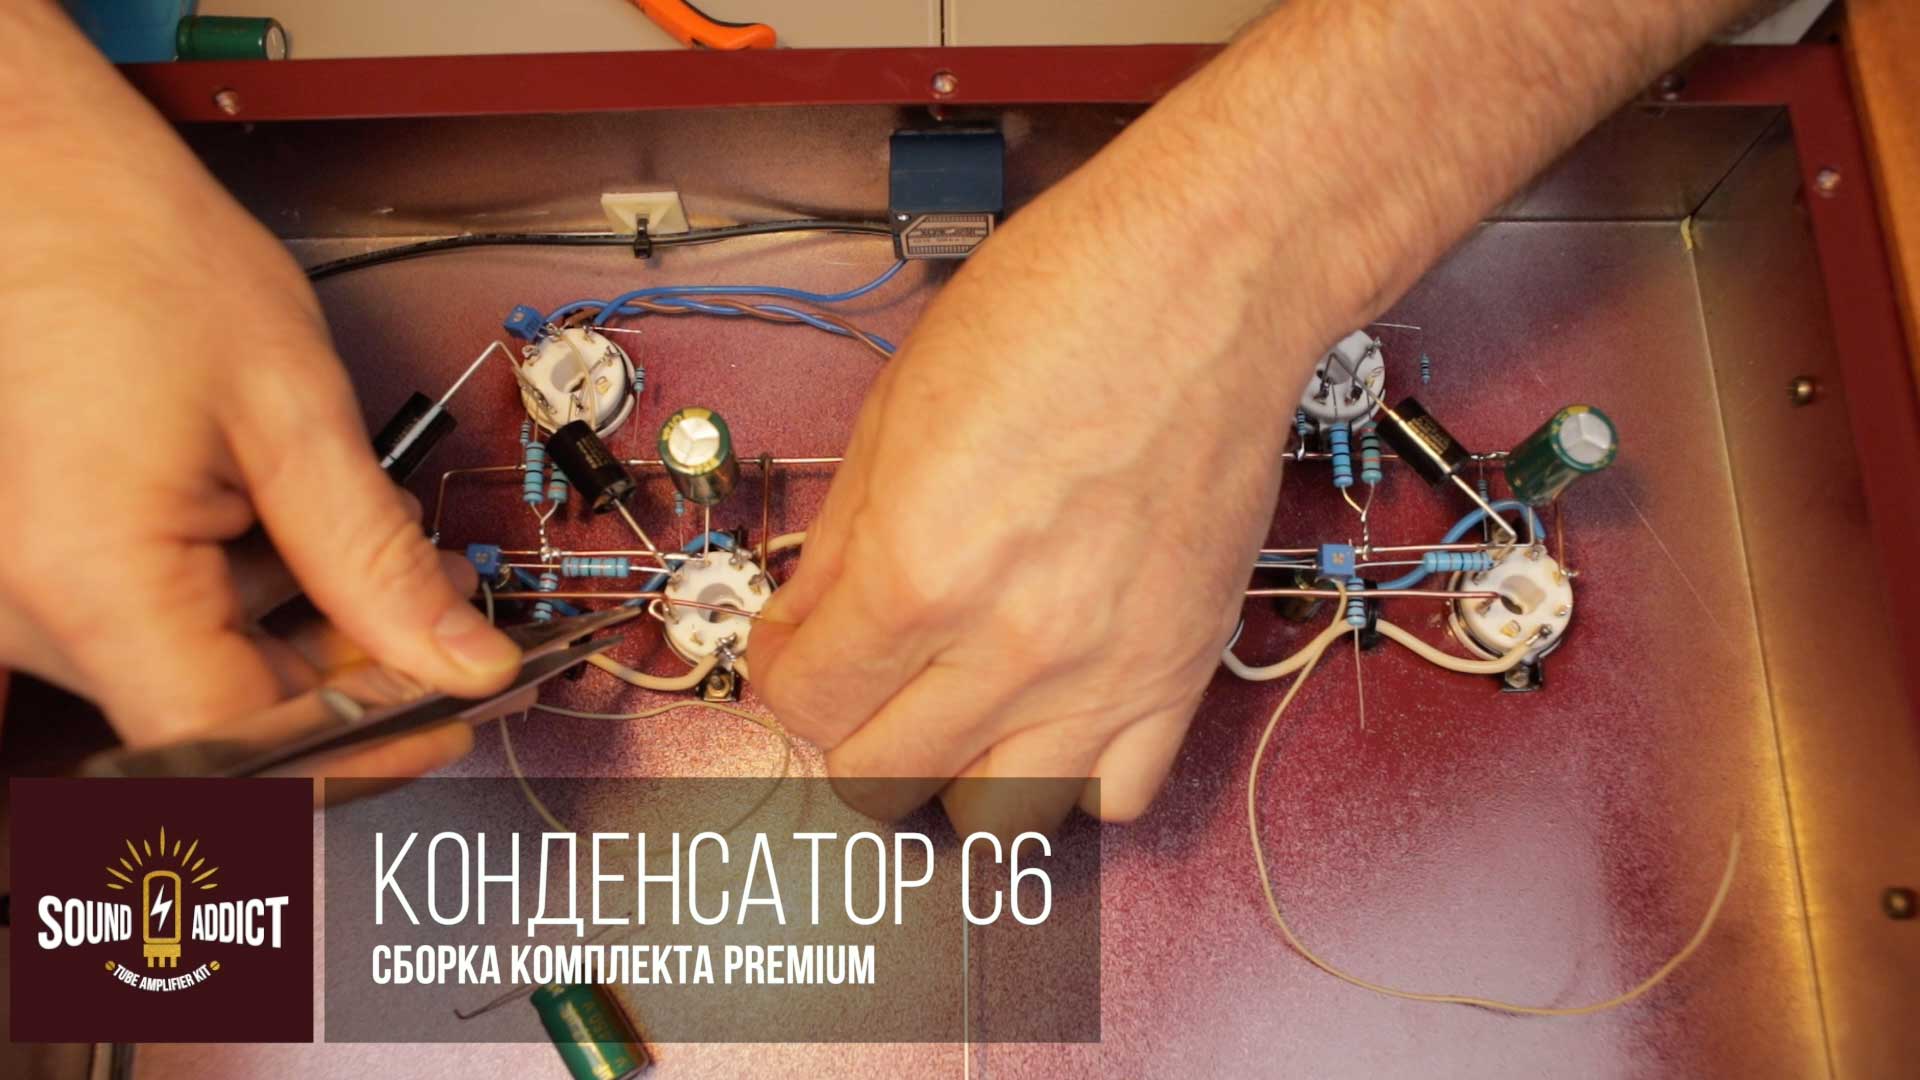 ШАГ 24. КОНДЕНСАТОР C6 / PREMIUM 1 - Ламповый усилитель своими руками SoundAddict